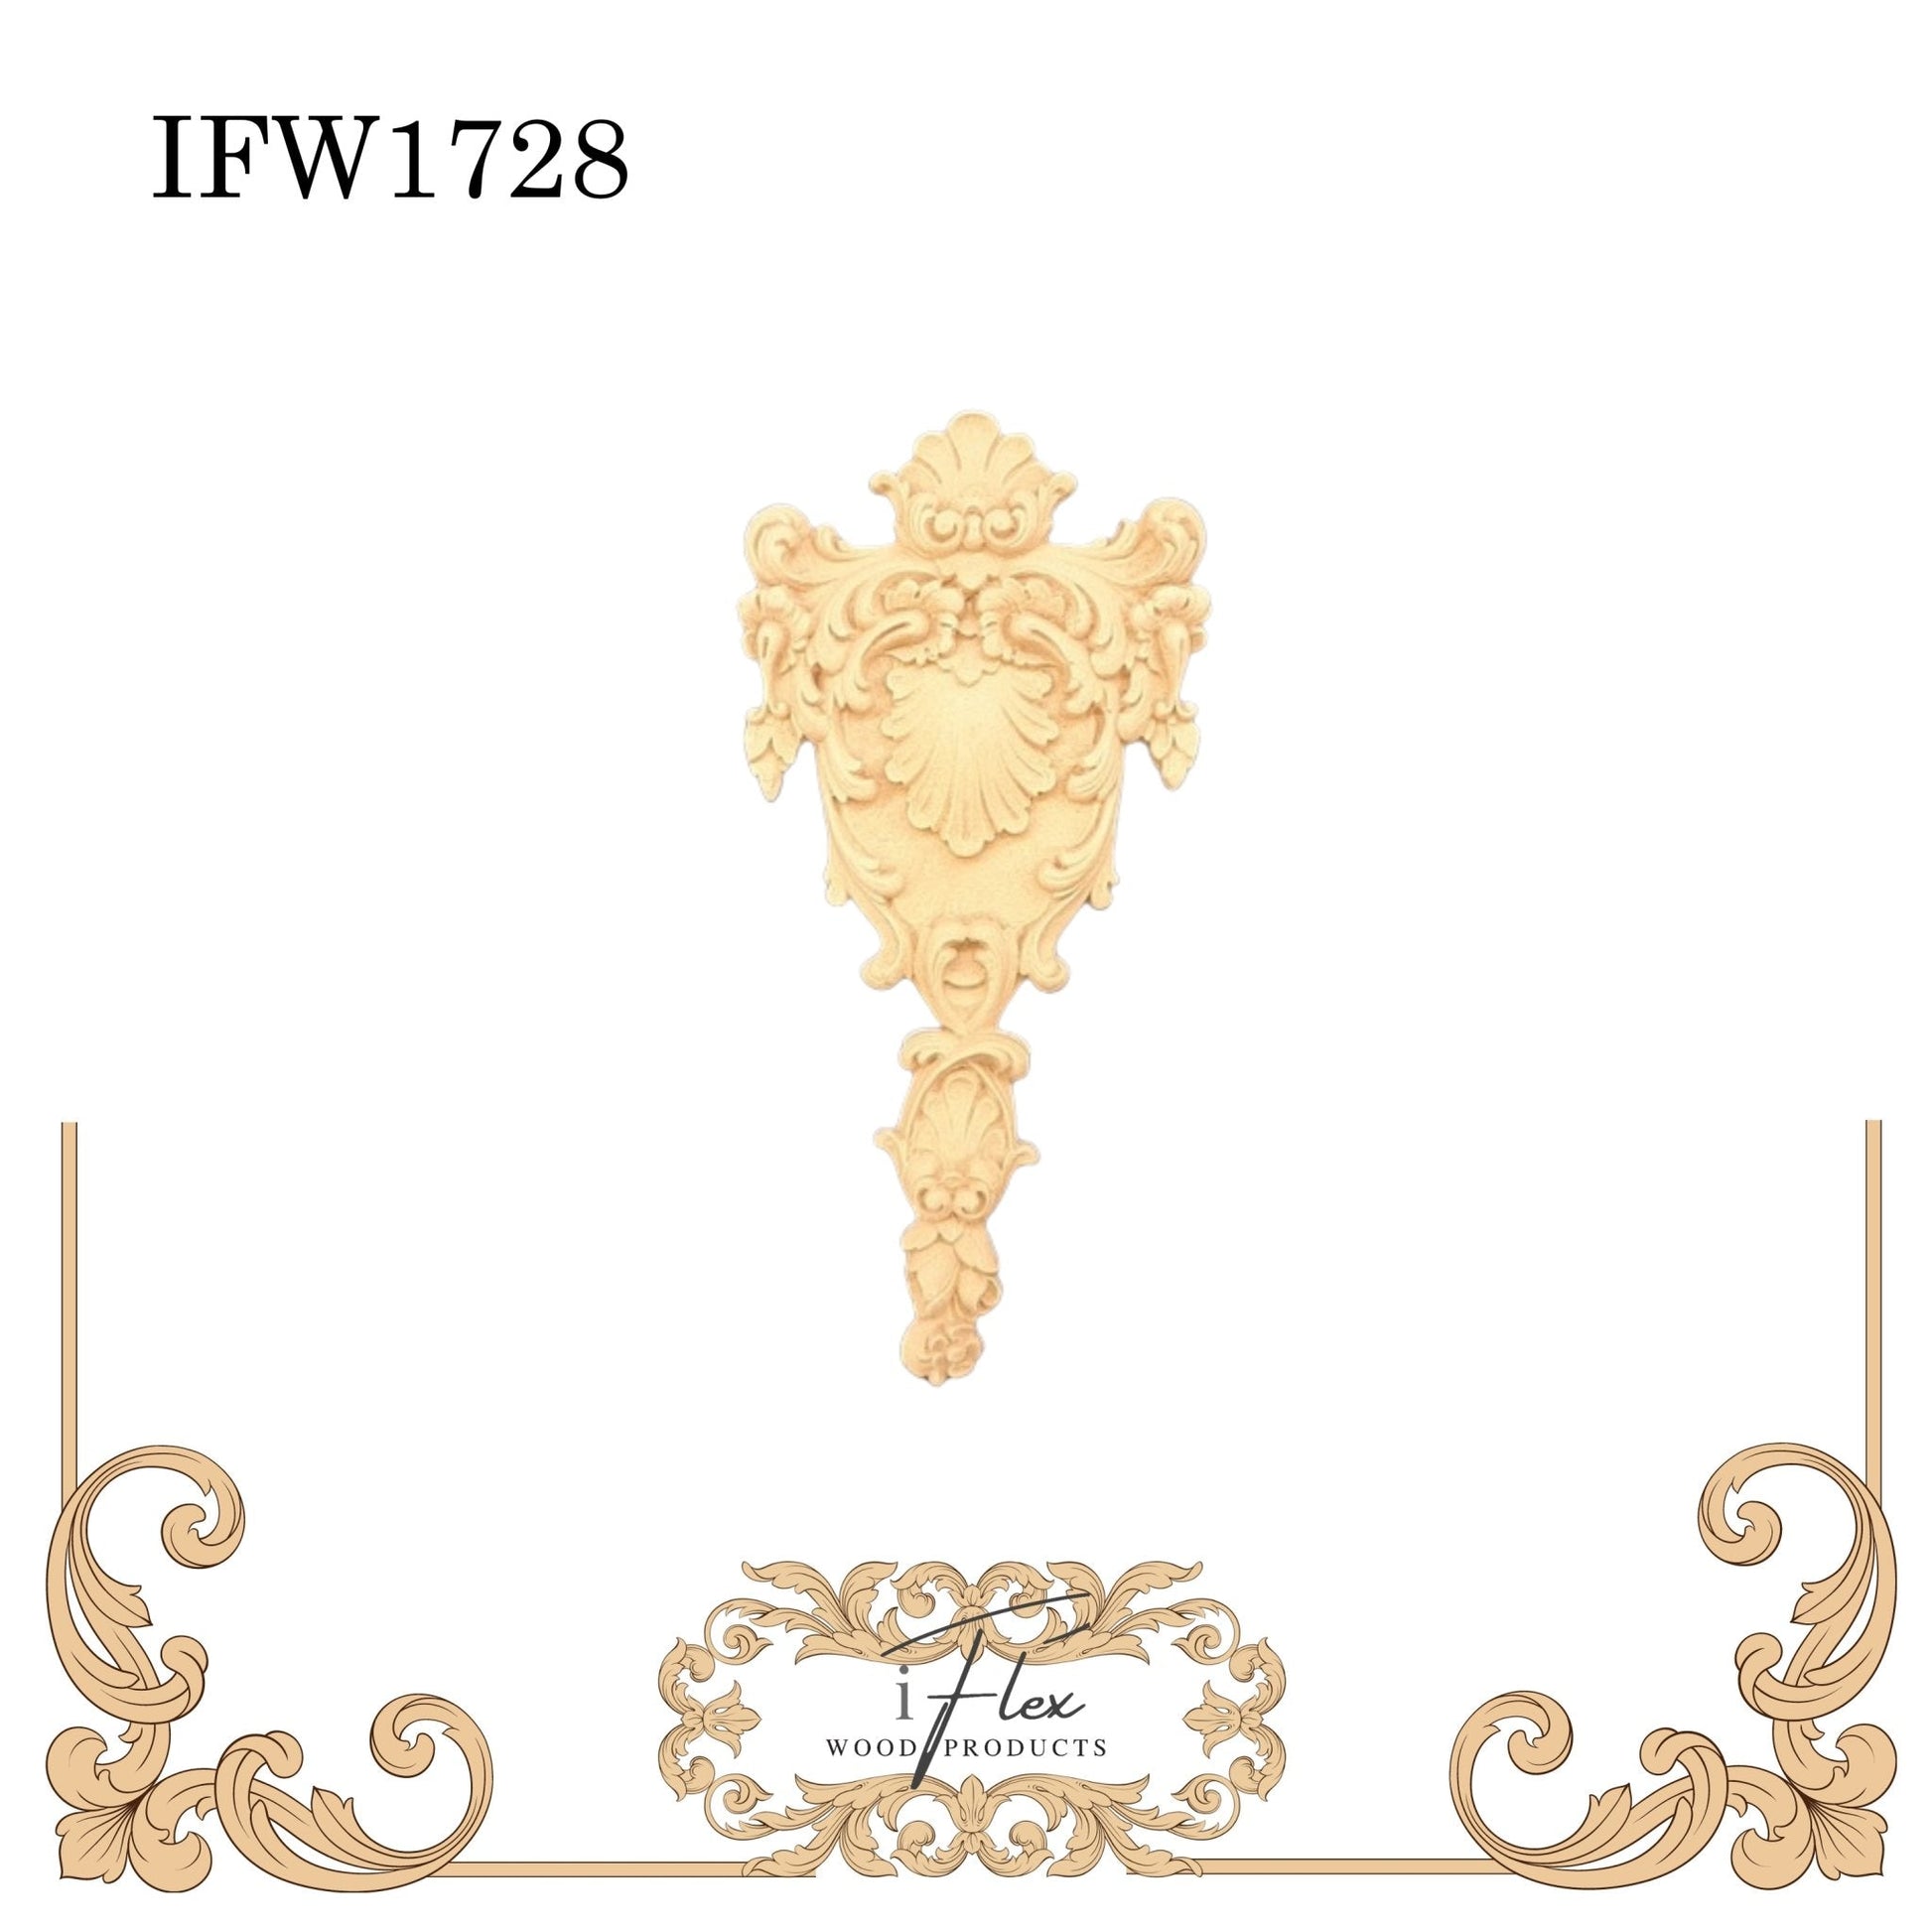 IFW 1728